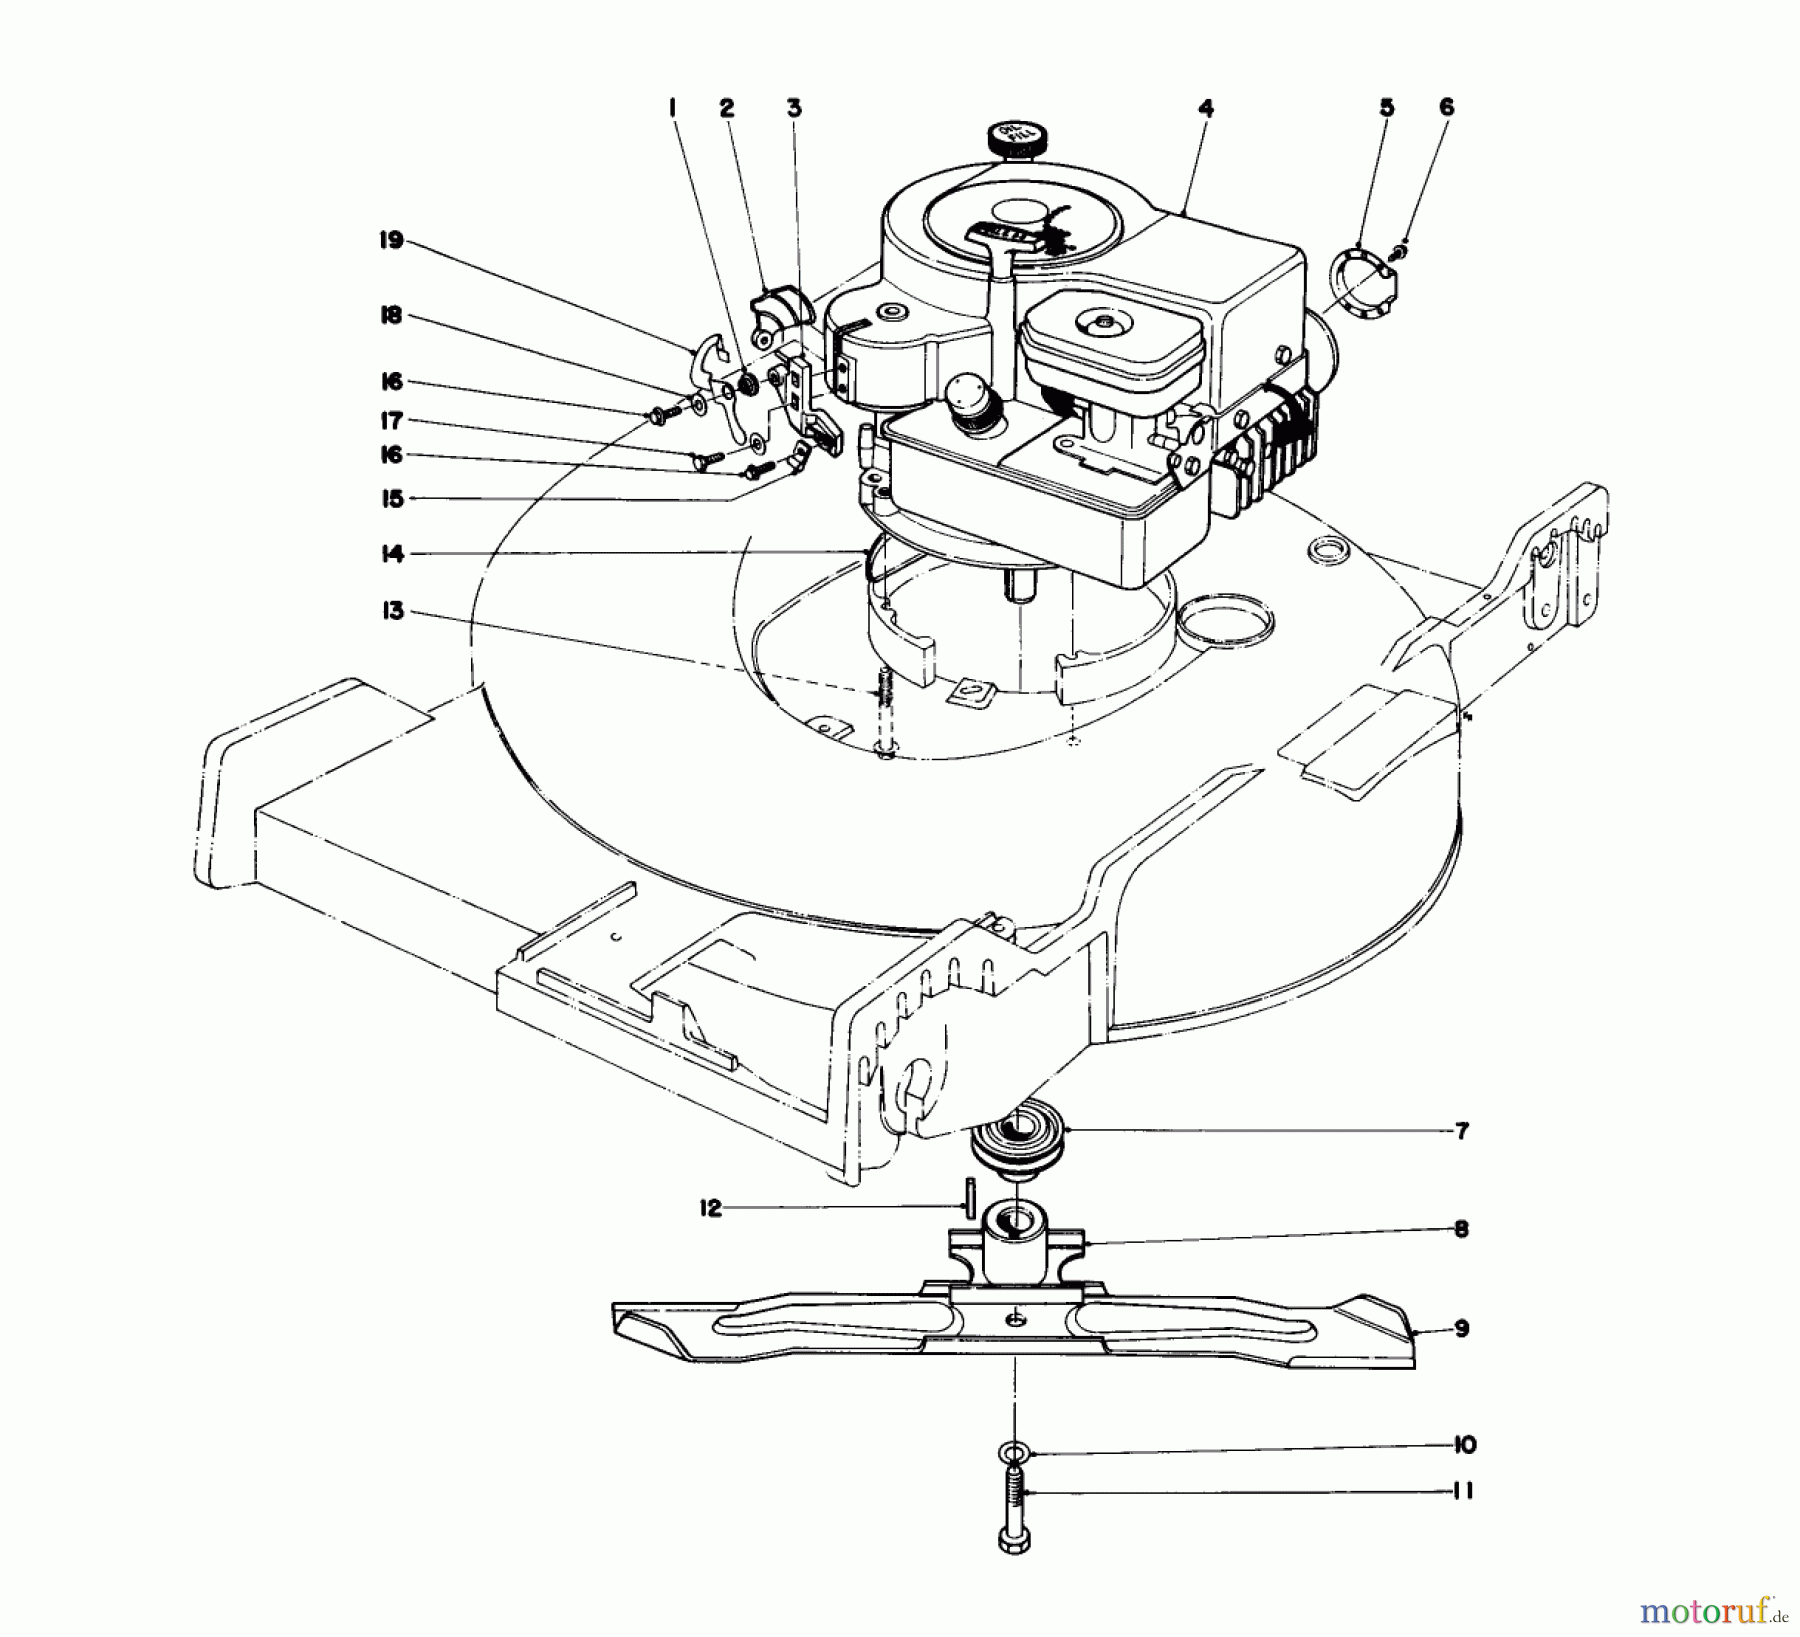  Toro Neu Mowers, Walk-Behind Seite 1 20755 - Toro Lawnmower, 1979 (9000001-9999999) ENGINE ASSEMBLY